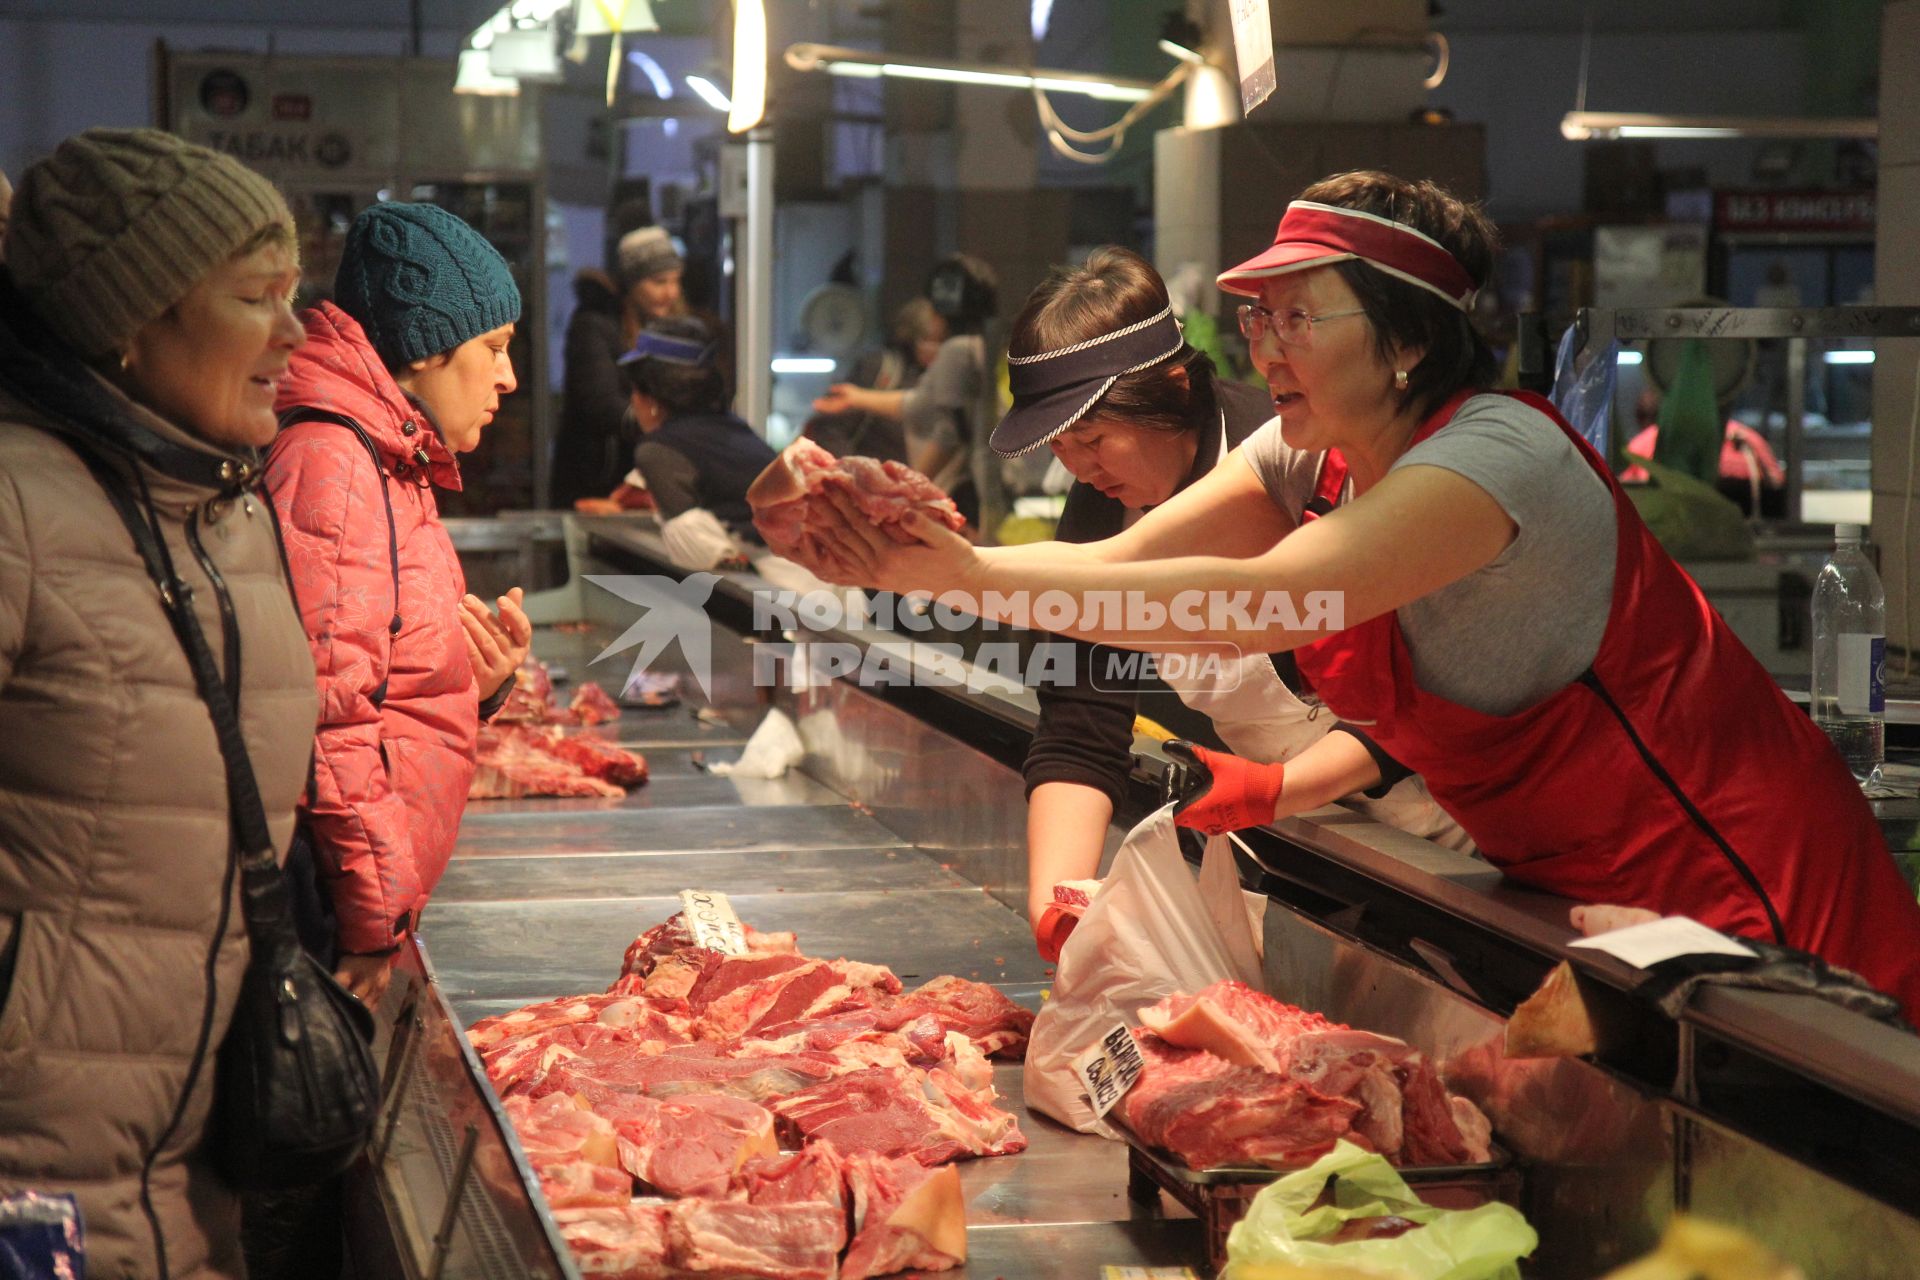 Иркутск. Женщина выбирает мясо на рынке.